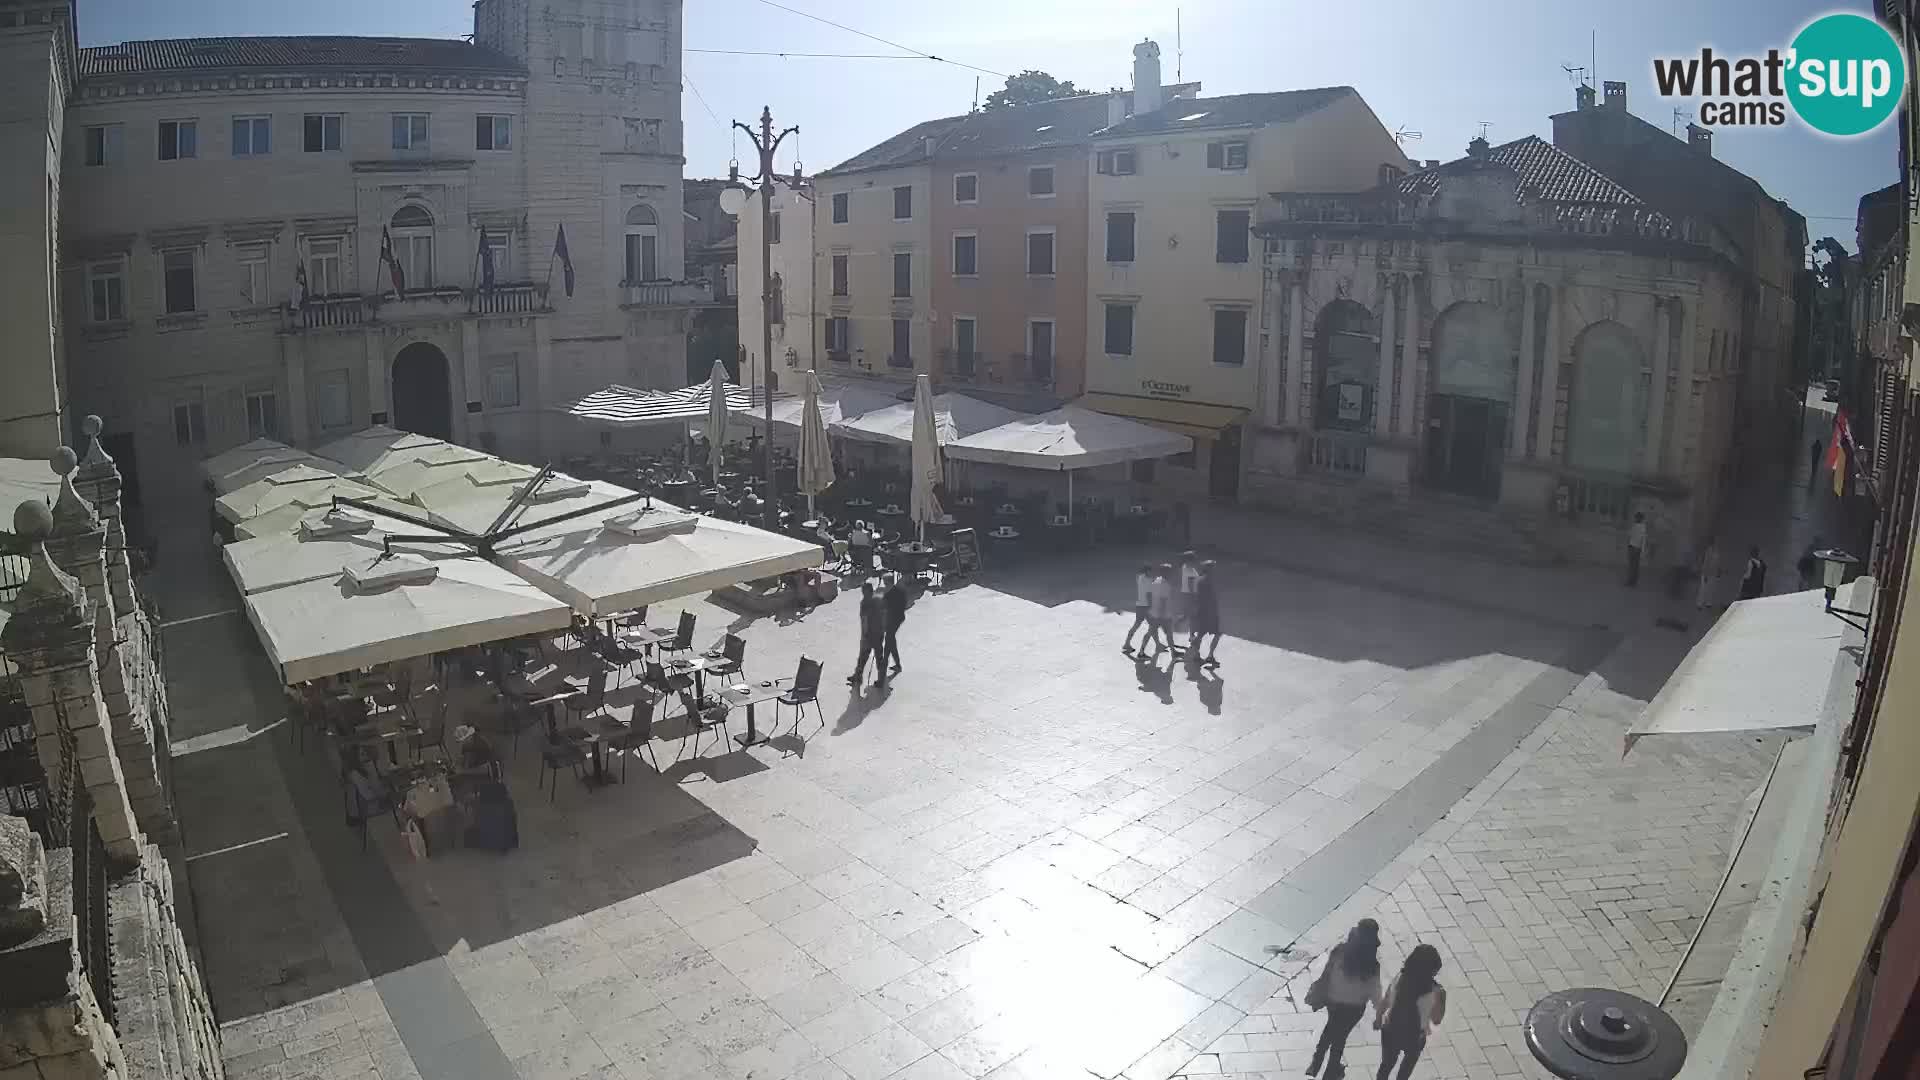 Zadar – Narodni trg – “Piazza del Popolo”